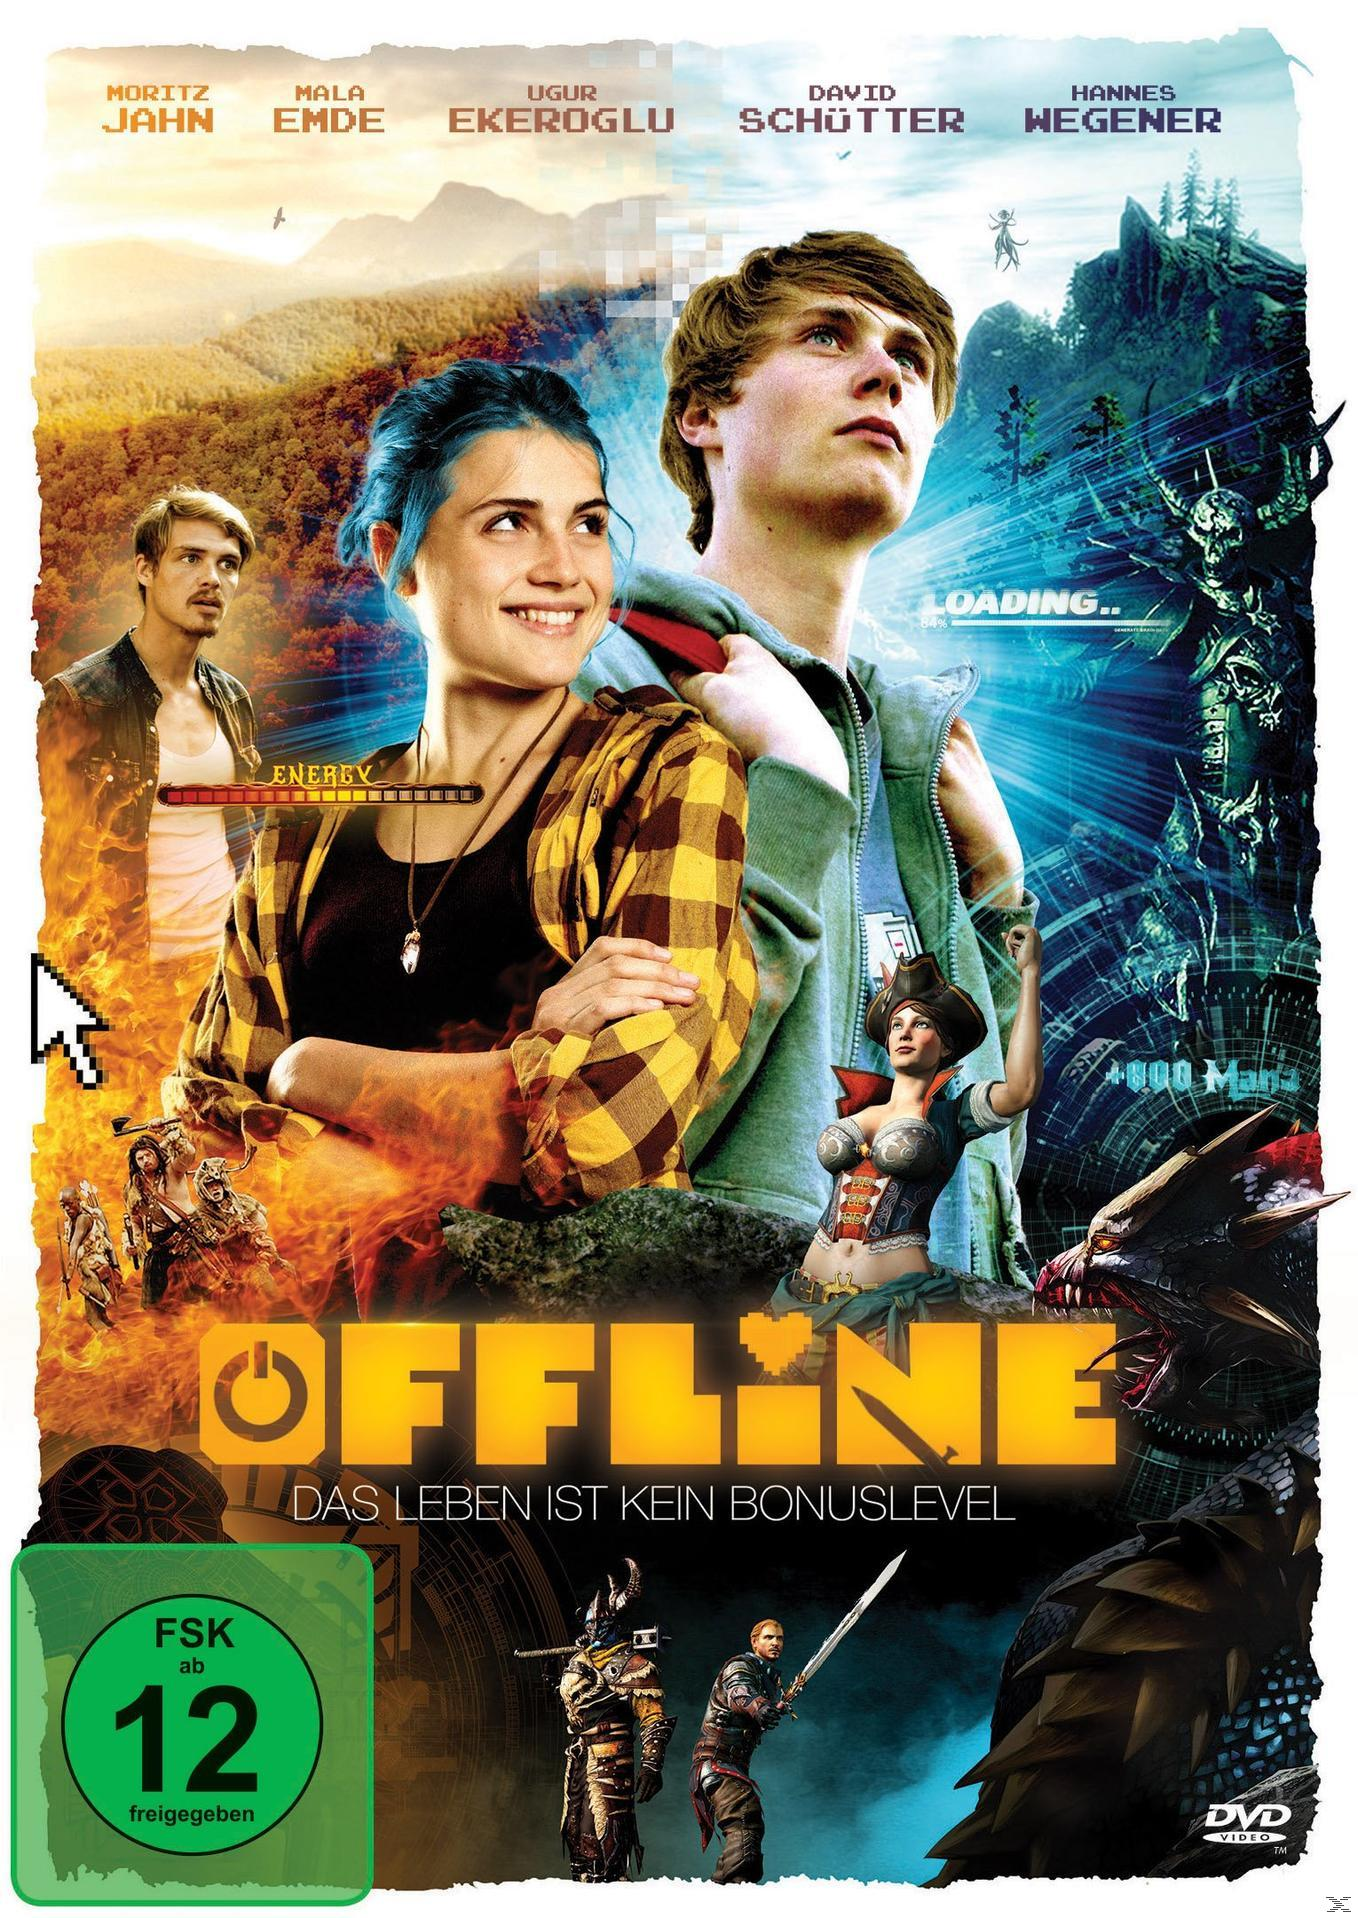 Offline Leben Bonuslevel - DVD kein ist Das